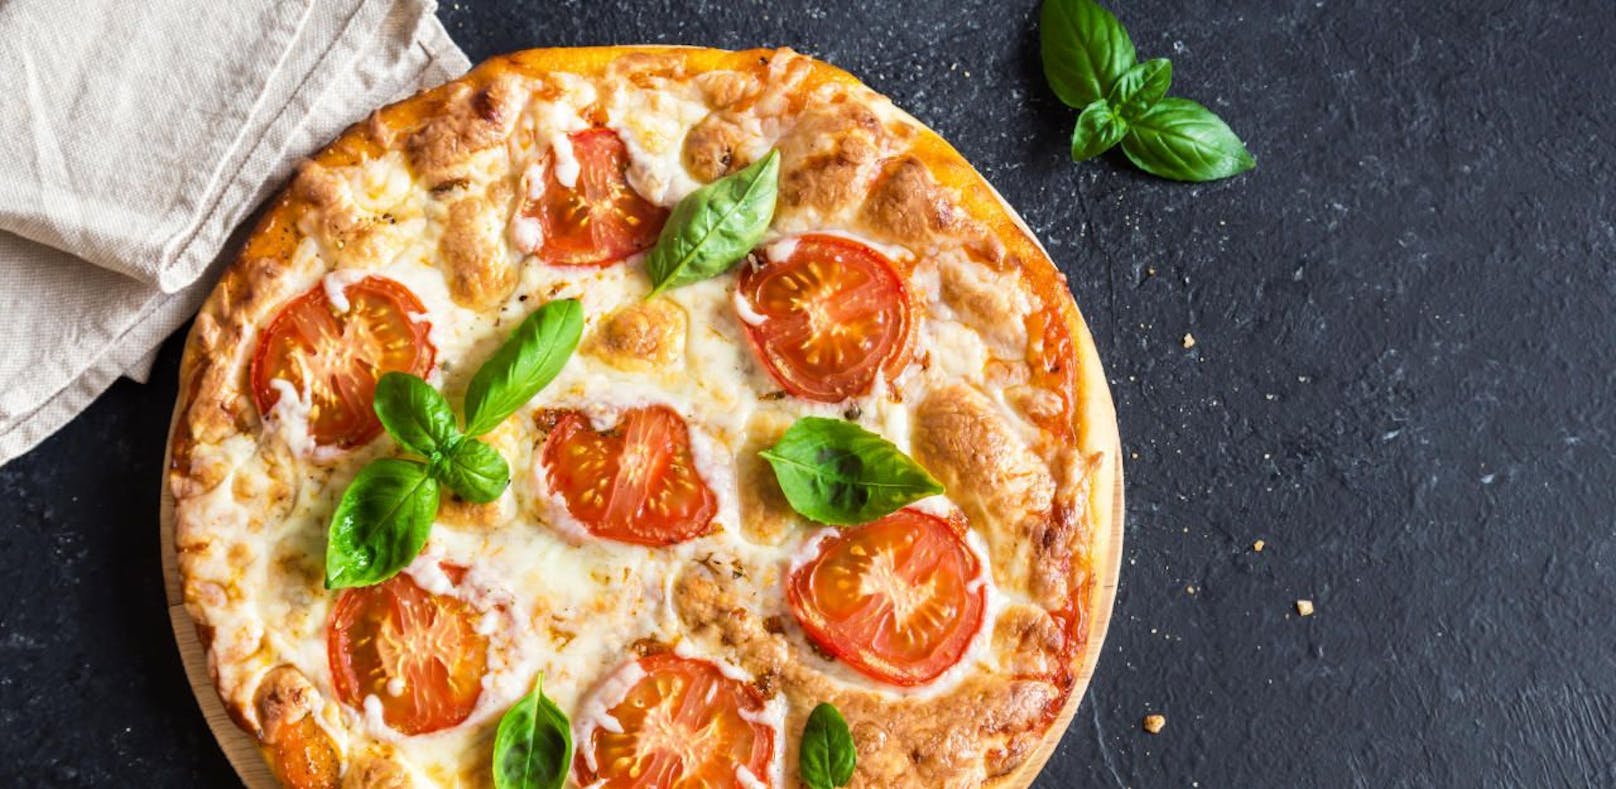 Lecker, kultig und jetzt auch Kulturerbe: die original neapolitanische Pizza.